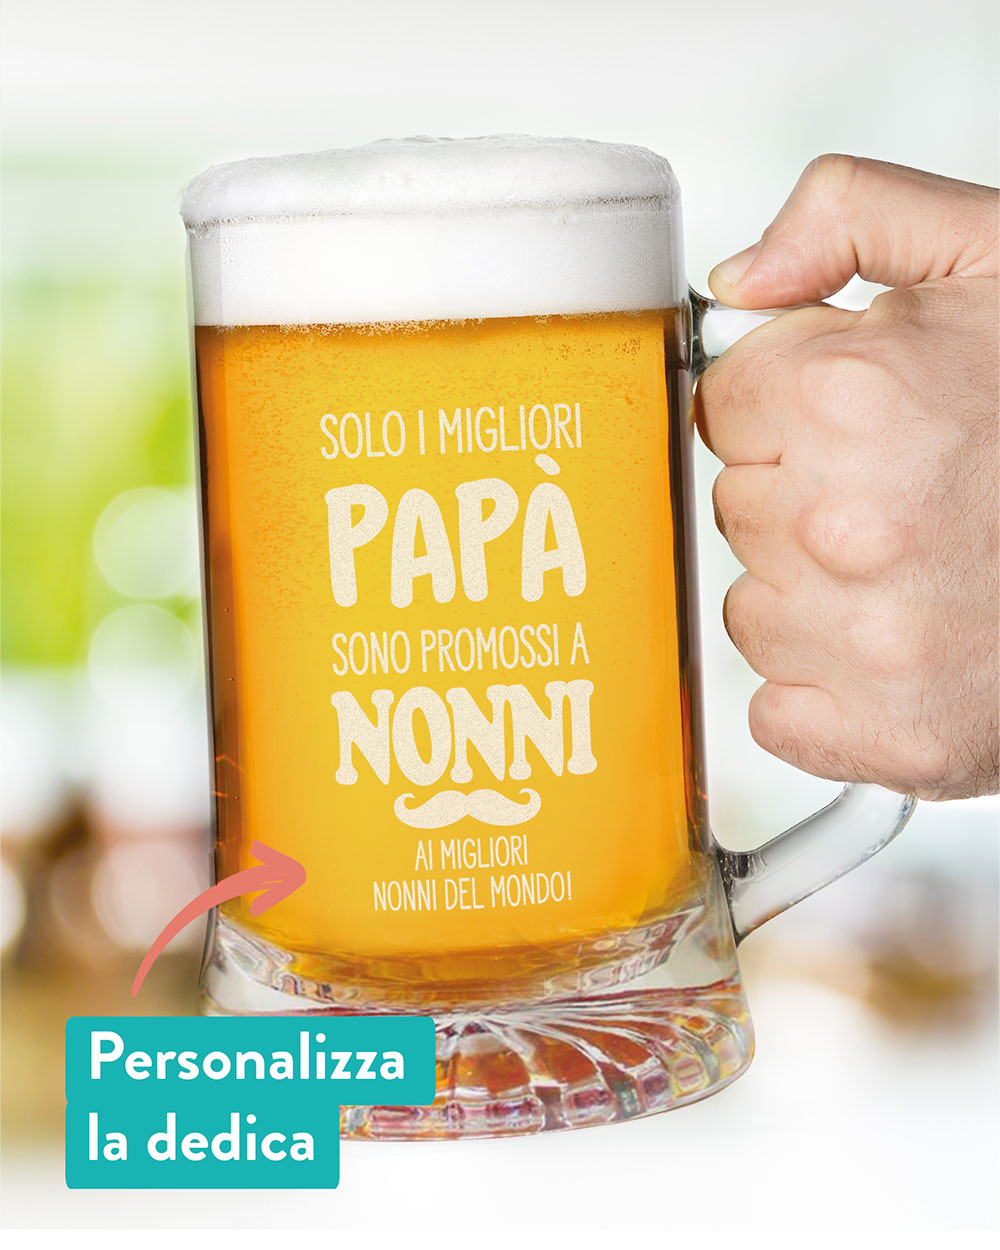 Boccale-birra-personalizzato-regalo-nonni-06